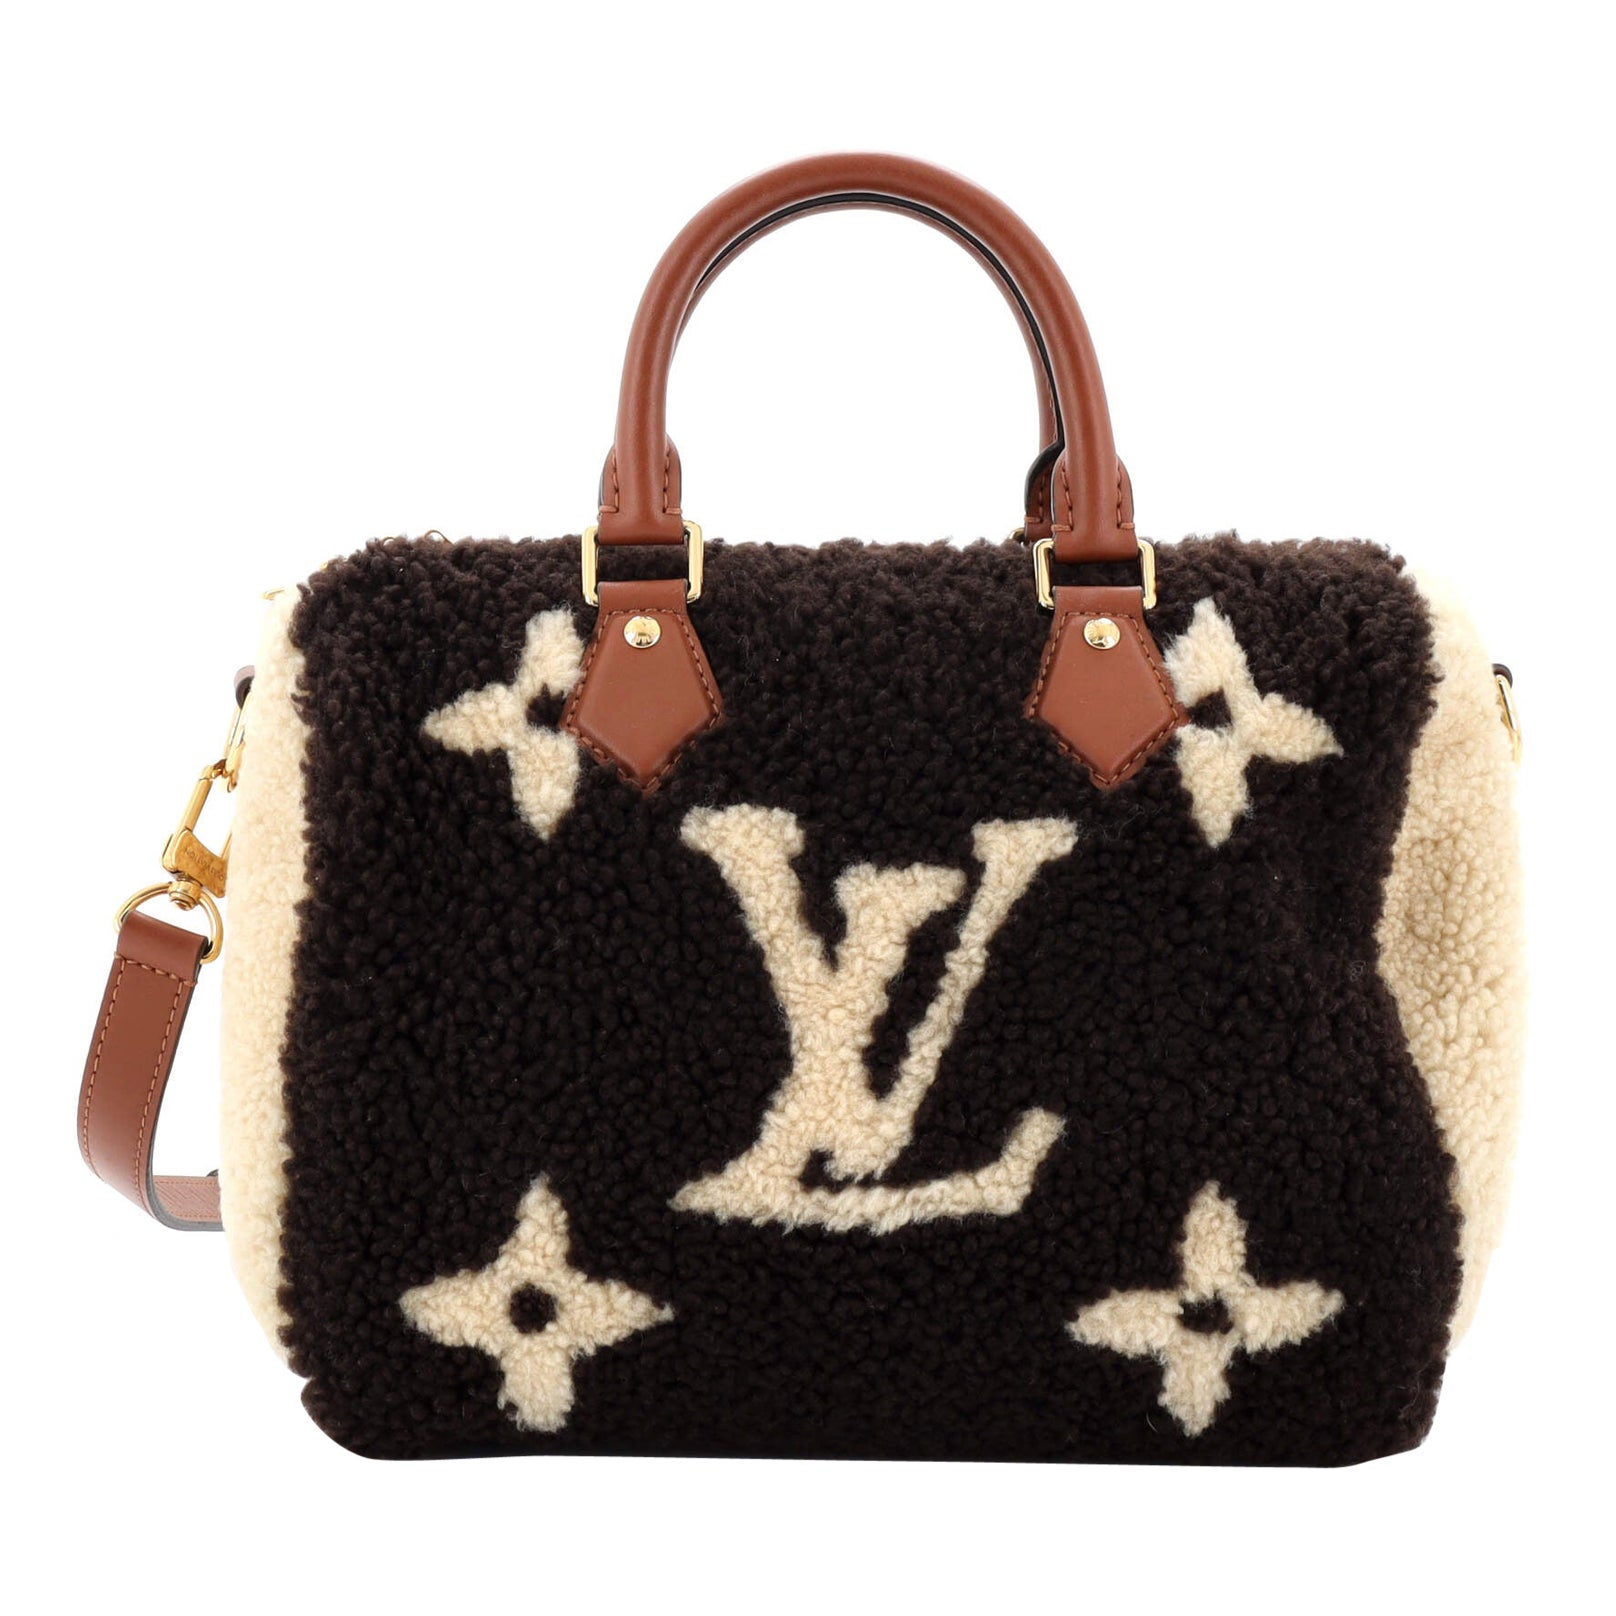 Louis Vuitton Speedy Bandouliere Tasche mit Monogramm aus riesigem Teddy-Fleece 25